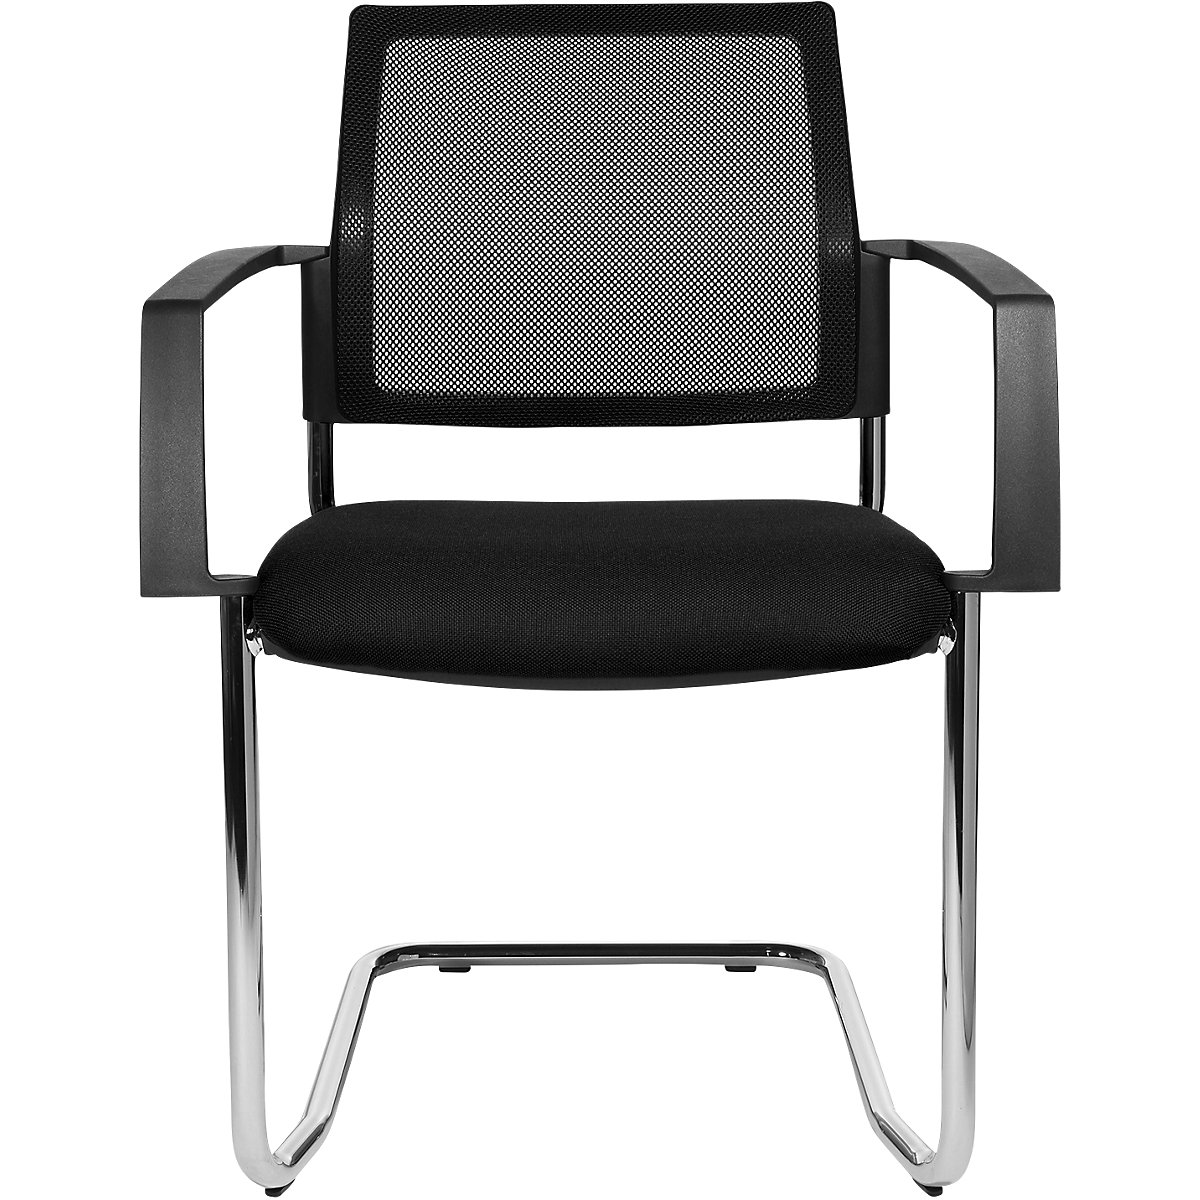 Složiva stolica s mrežastim naslonom – Topstar, konzolna stolica, pak. 2 kom., sjedalo u crnoj boji, kromirano postolje